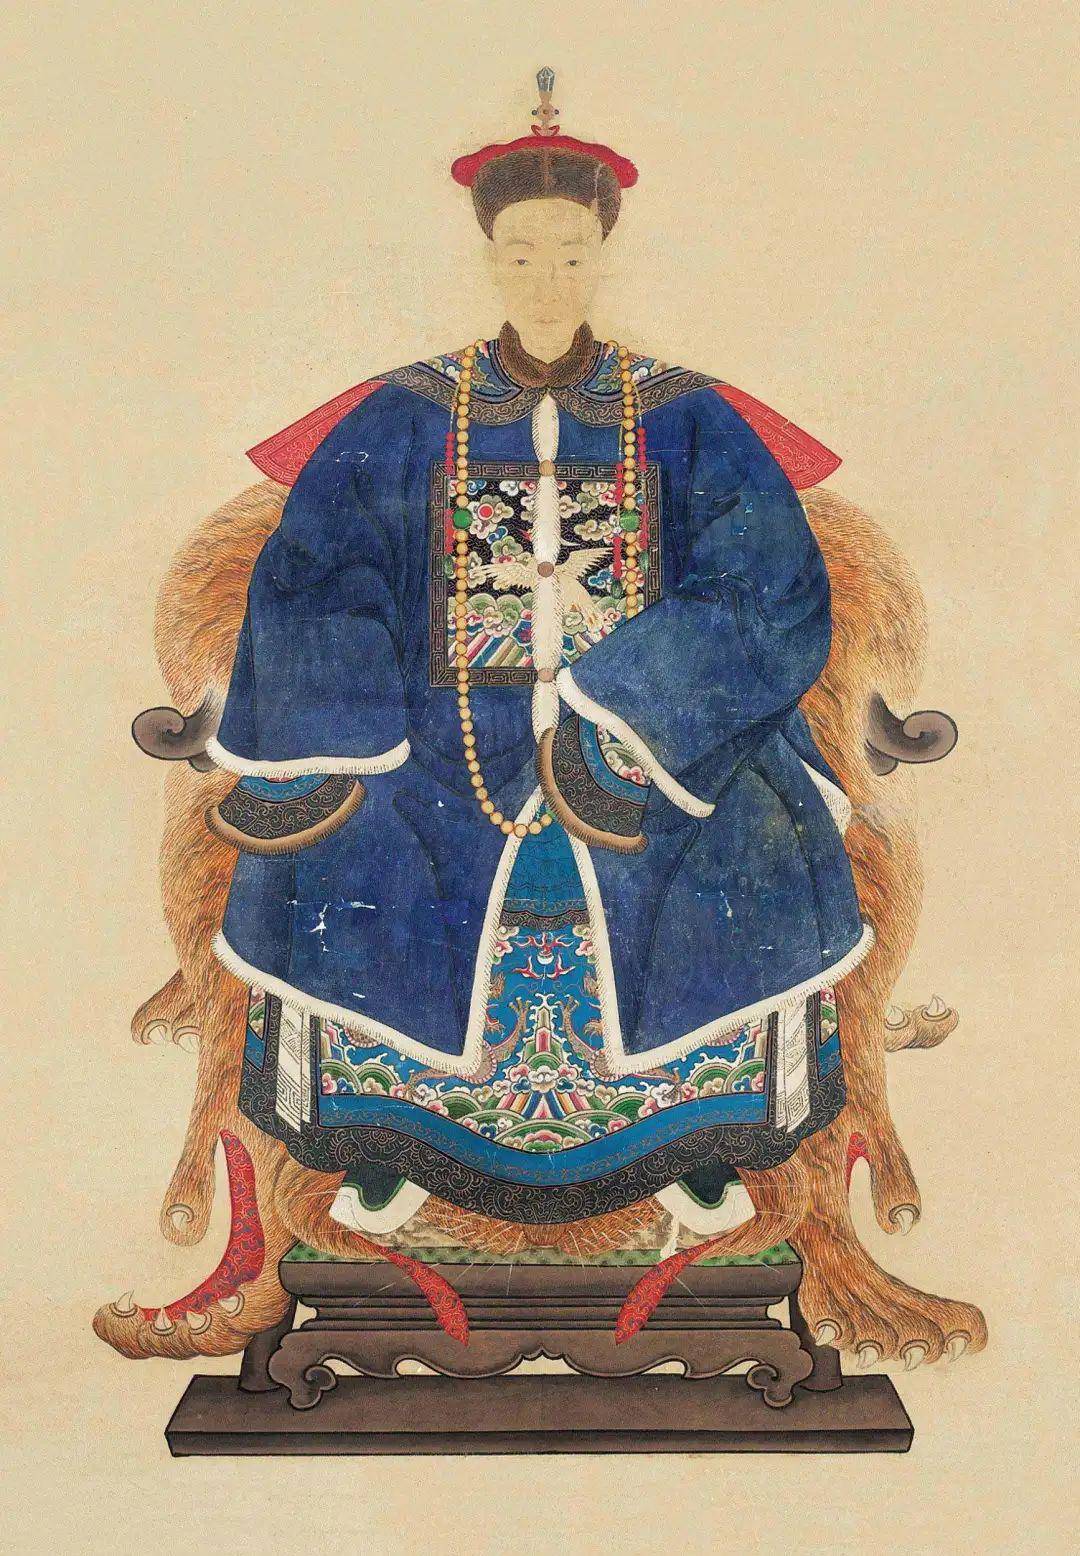 在一些清代的帝王或官员的画像中,常能见到他们佩戴朝珠